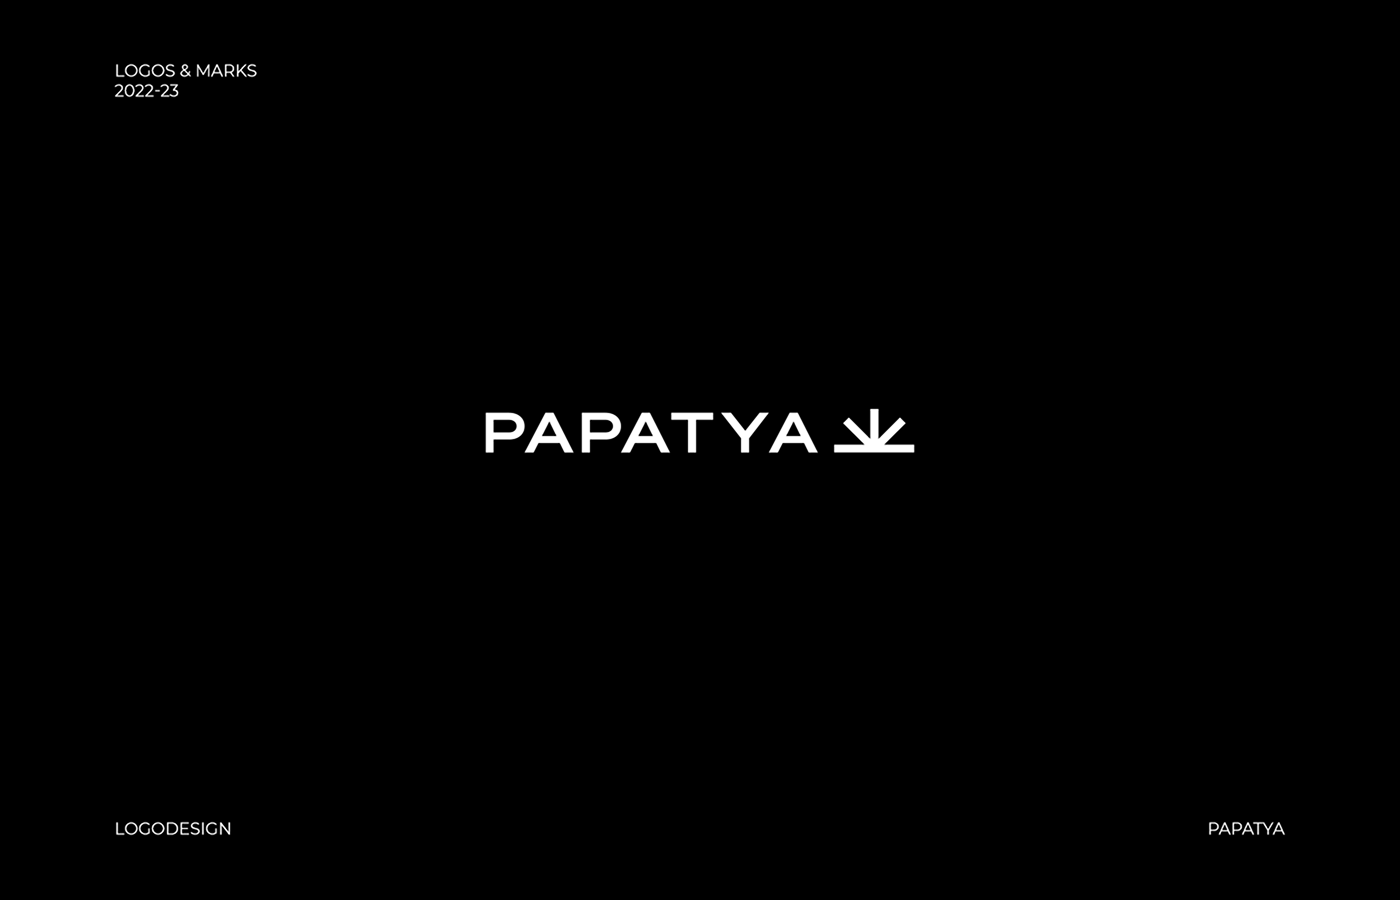 Papatya logo